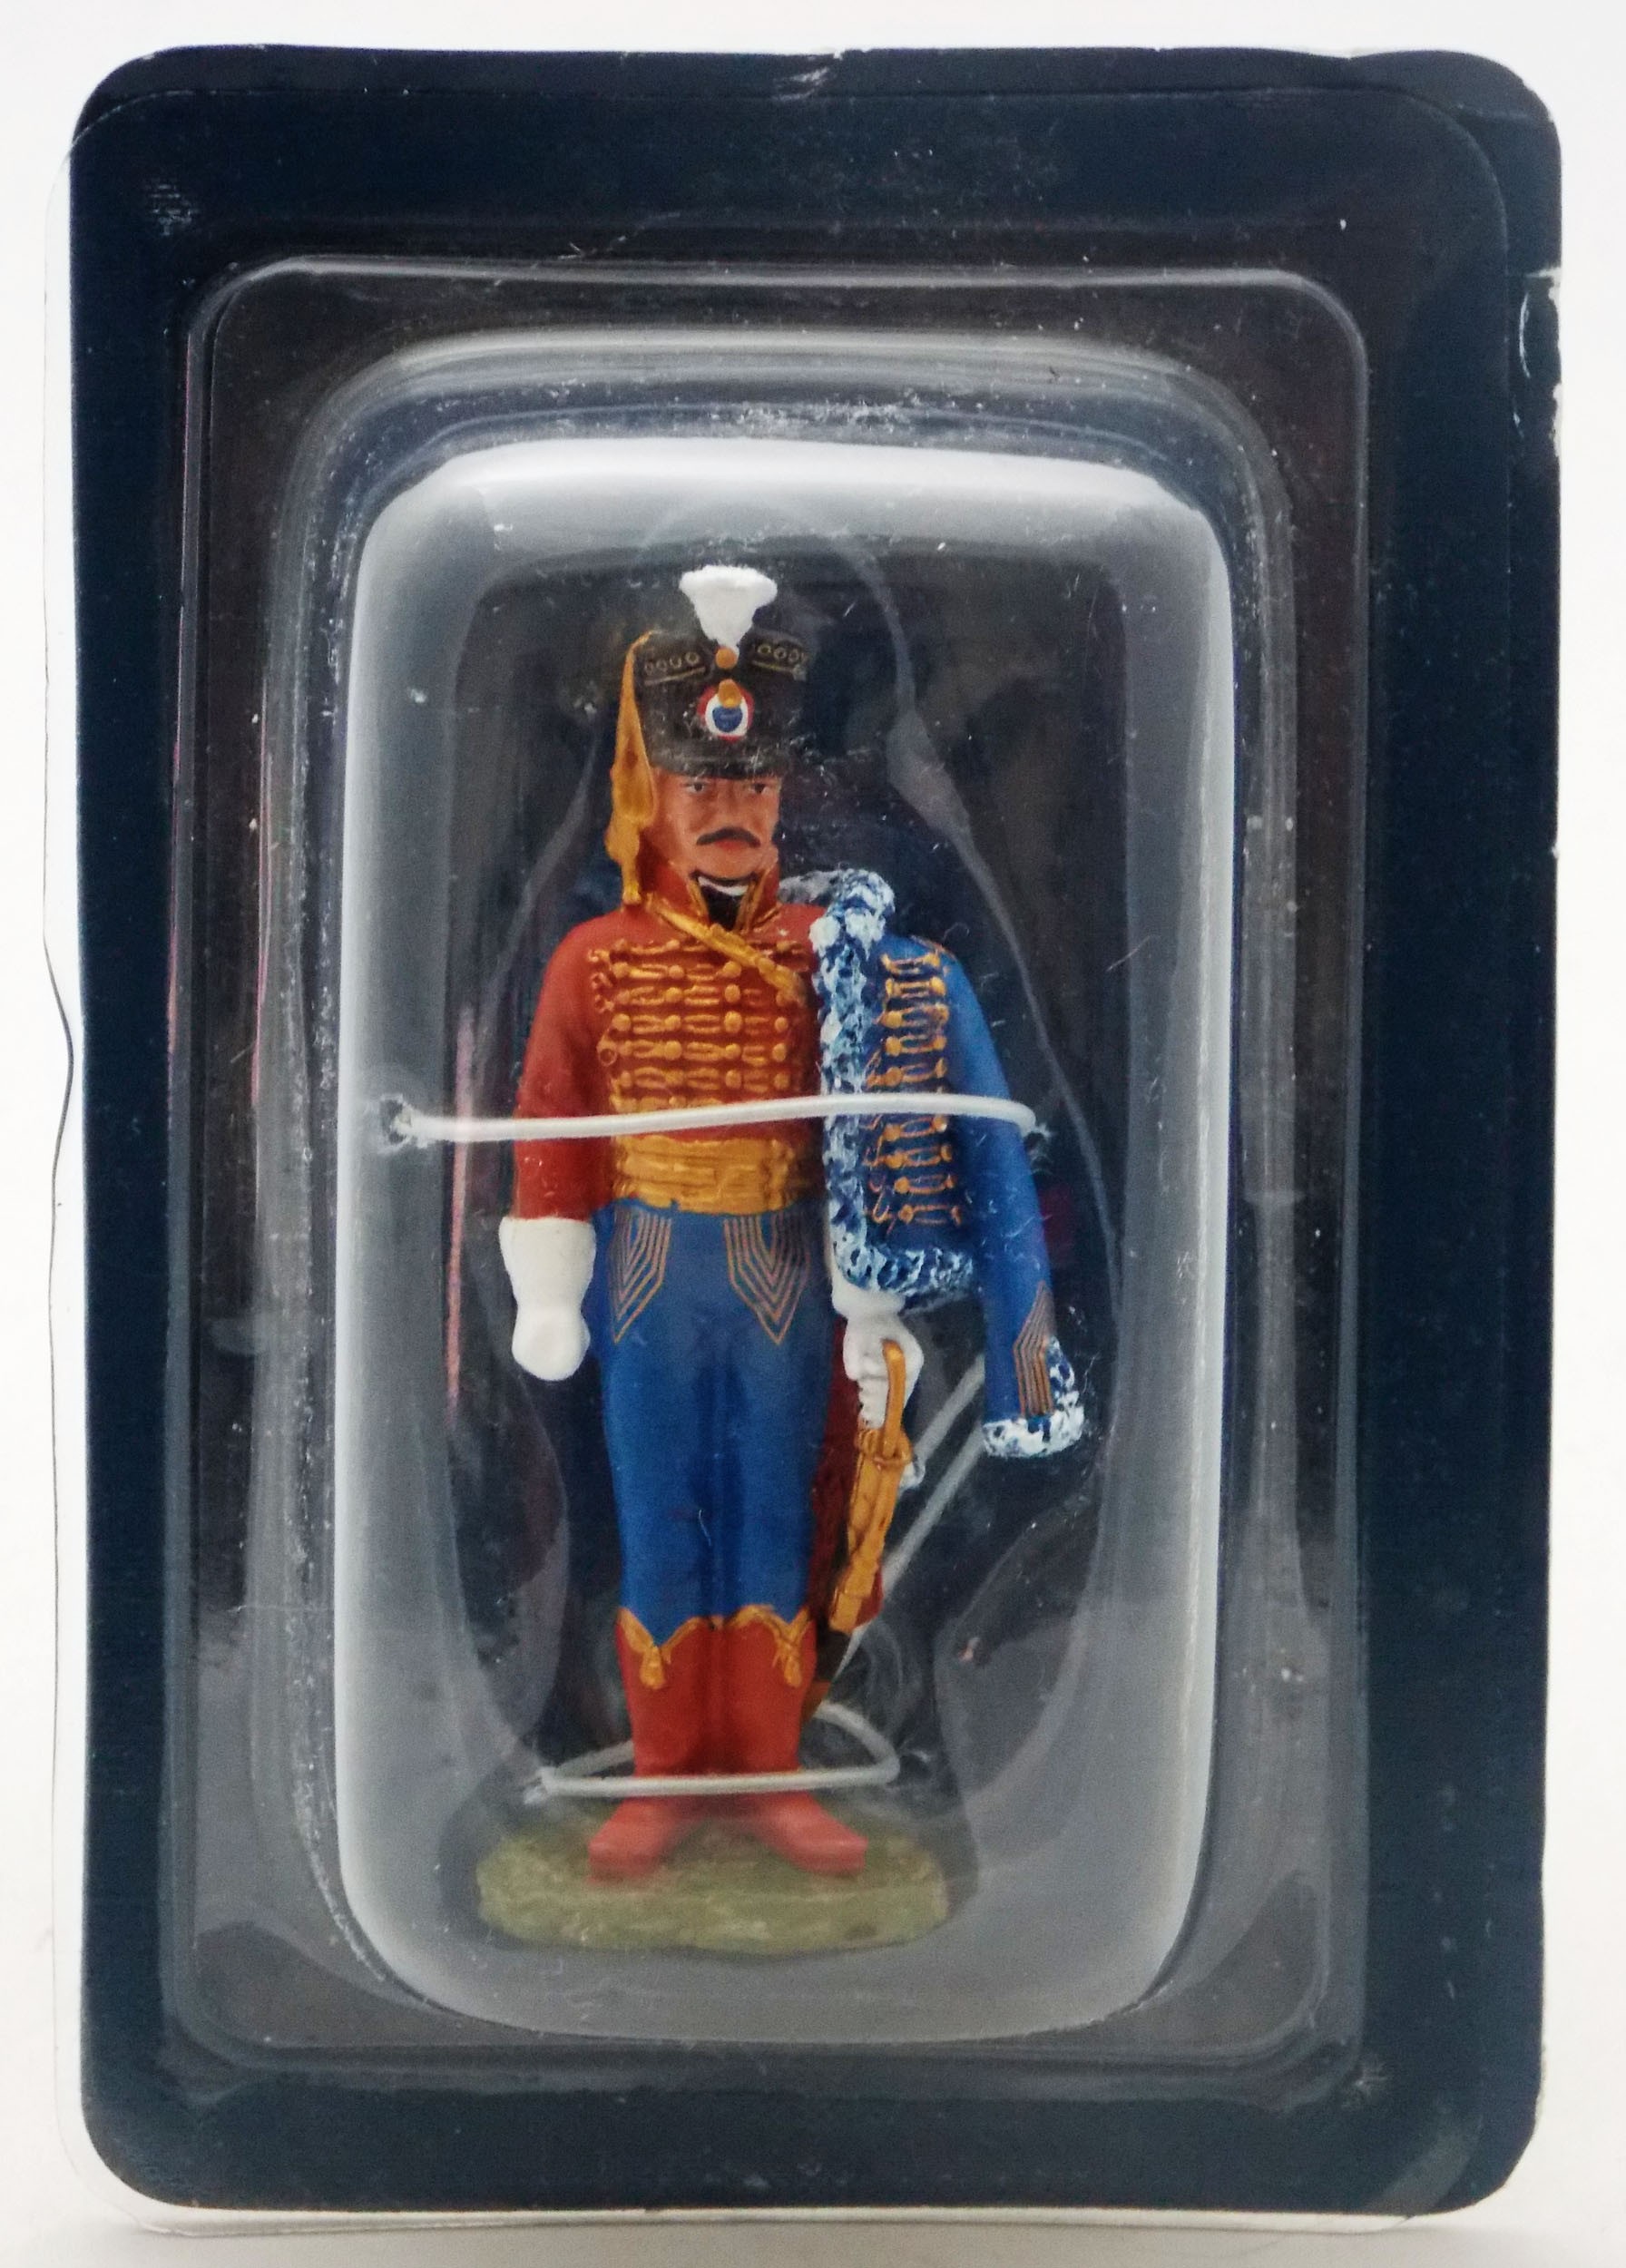 Marshals 1er empire no 164 hatchet-General vallin 1770-toy soldiers 